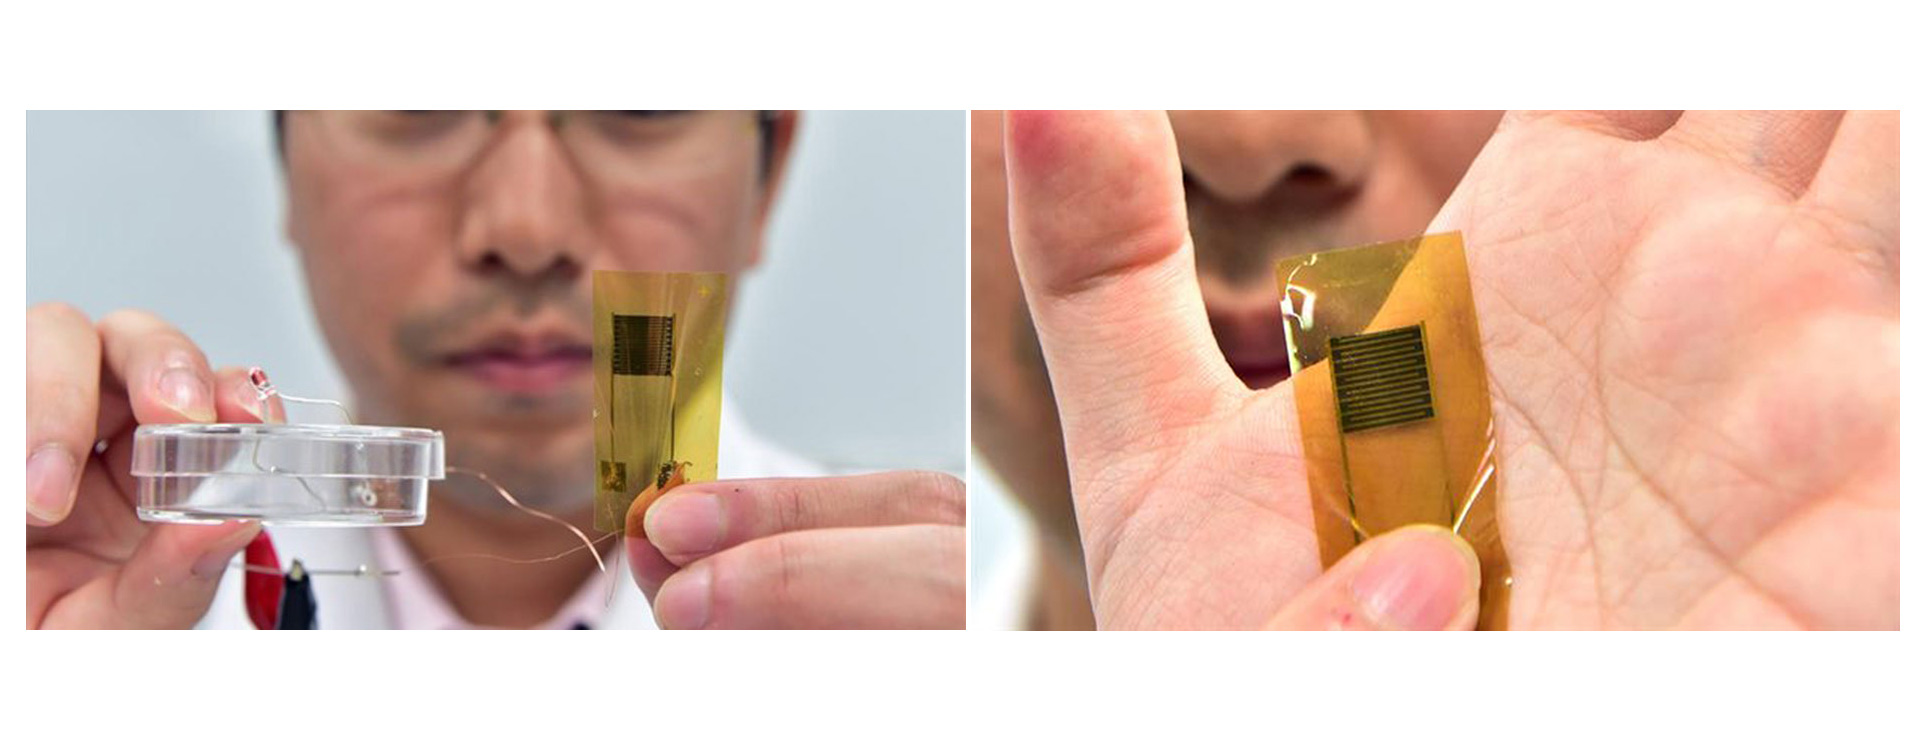 Investigadores de la Universidad de Tokio han desarrollado un termómetro ultrafino con forma de curita que se adhiere a la piel